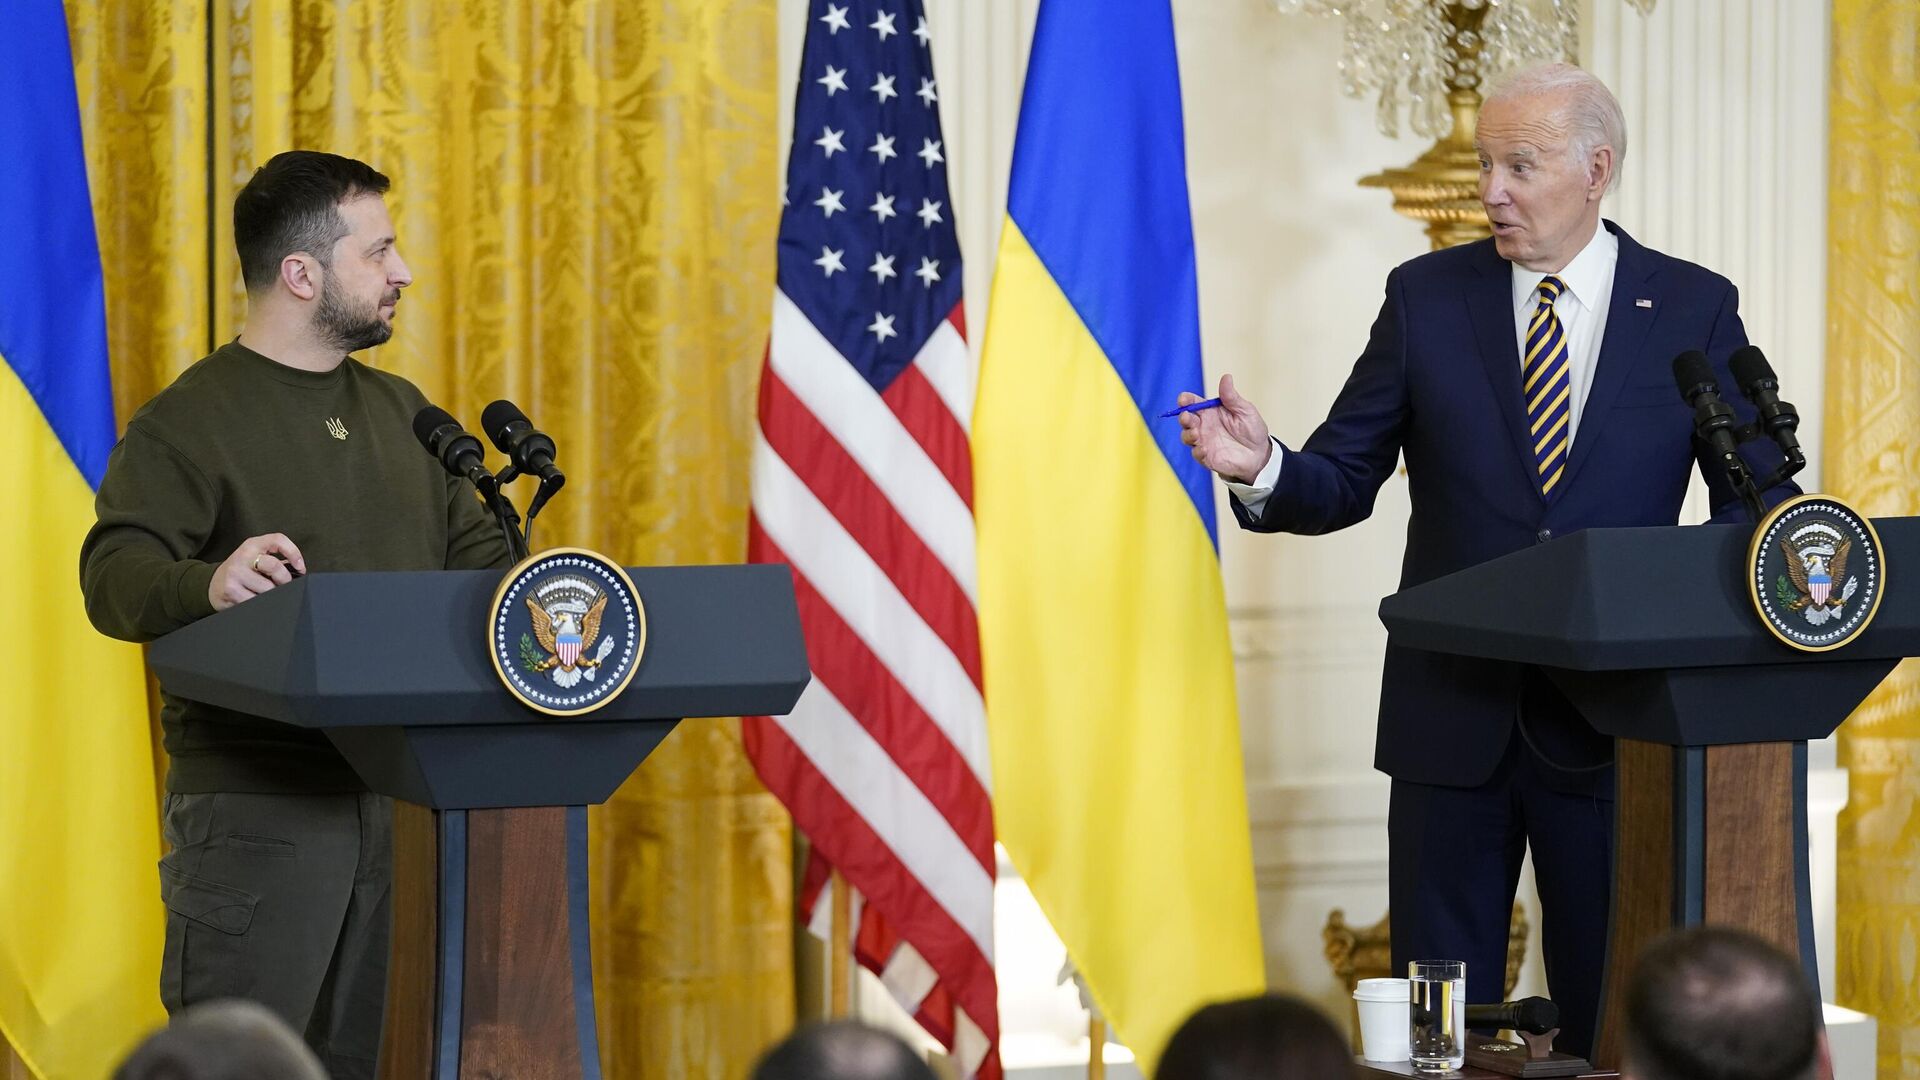 Президент США Джо Байден и президент Украины Владимир Зеленский во время пресс-конференции в Белом доме в Вашингтоне. 21 декабря 2022 года - ИноСМИ, 1920, 27.05.2023